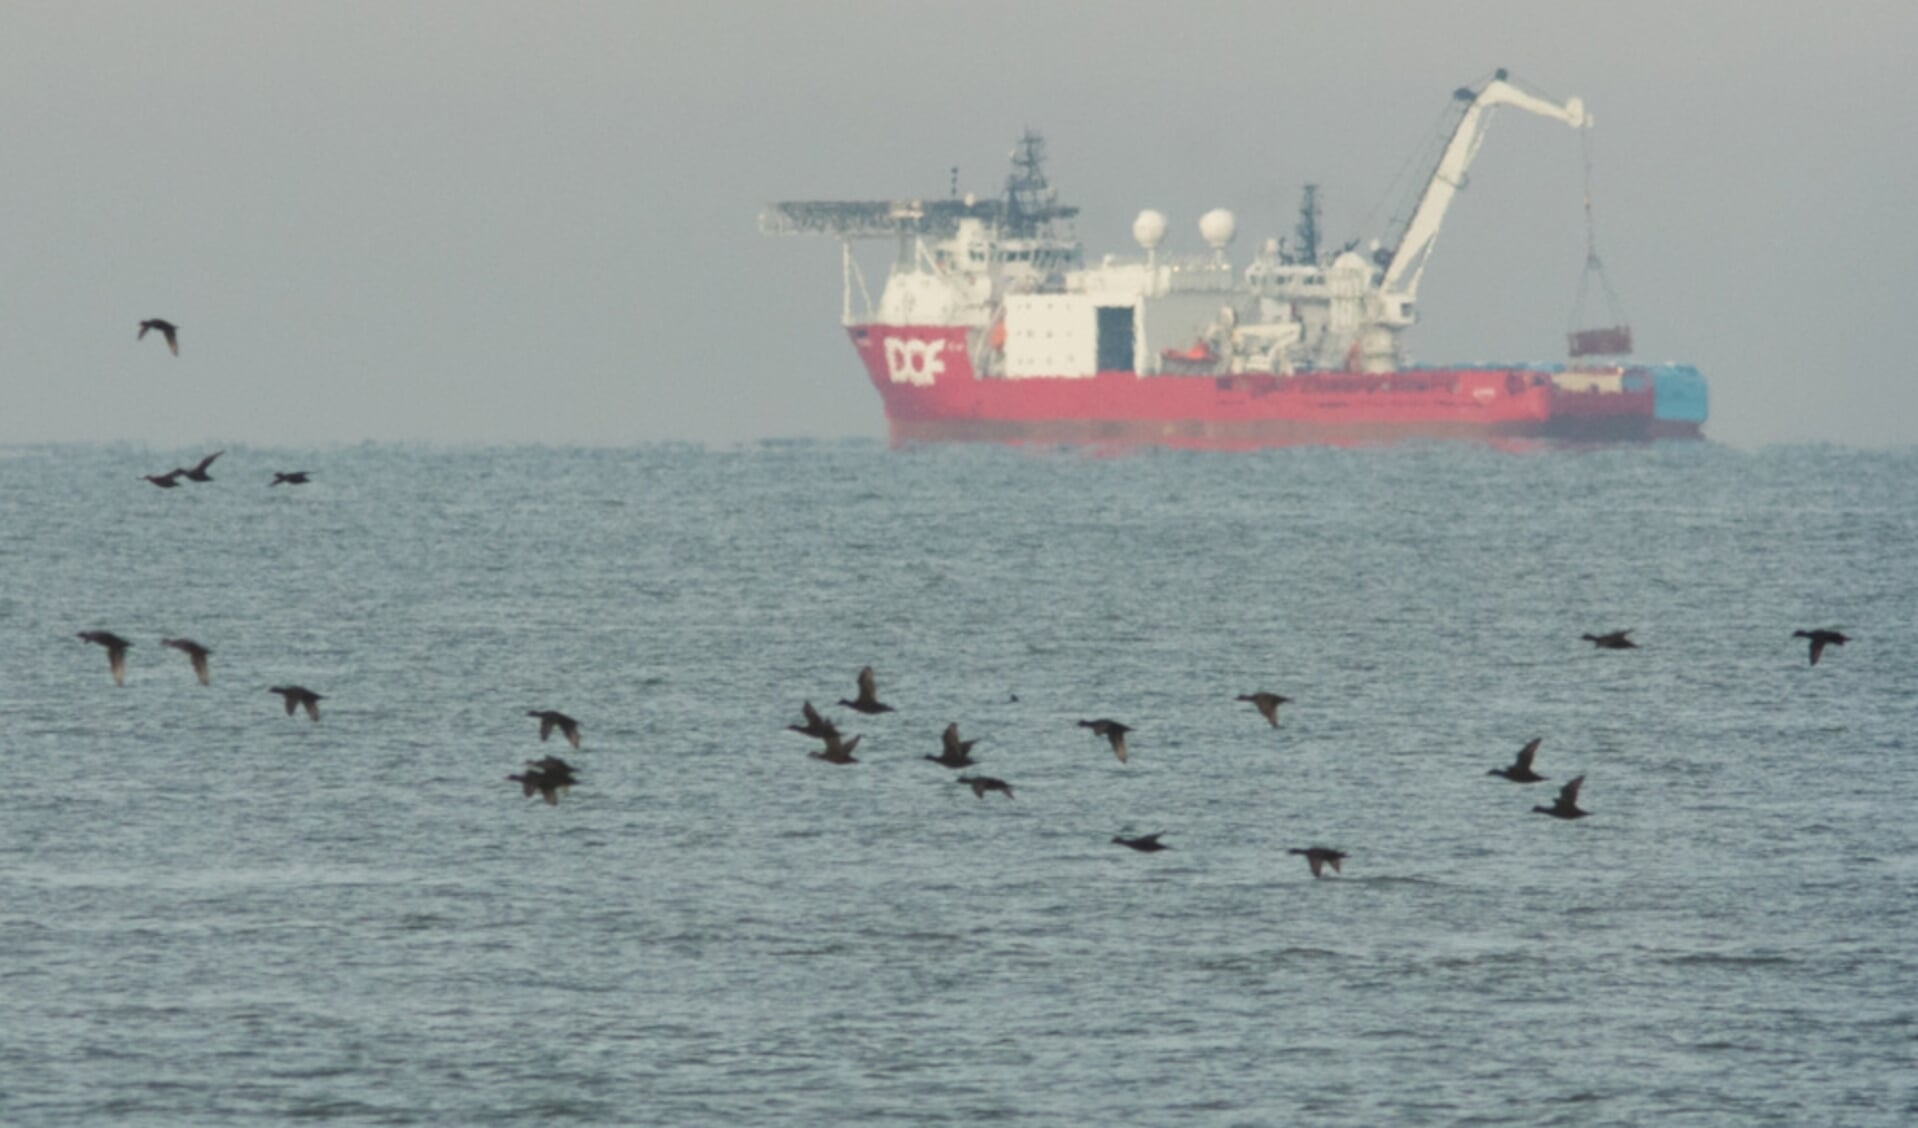  Foto: Hans Verdaat/Wageningen Marine Research - Zwarte zee-eenden noordwest van Ameland, met op de achtergrond een bergingsschip dat een verloren container heeft terug gevonden. 